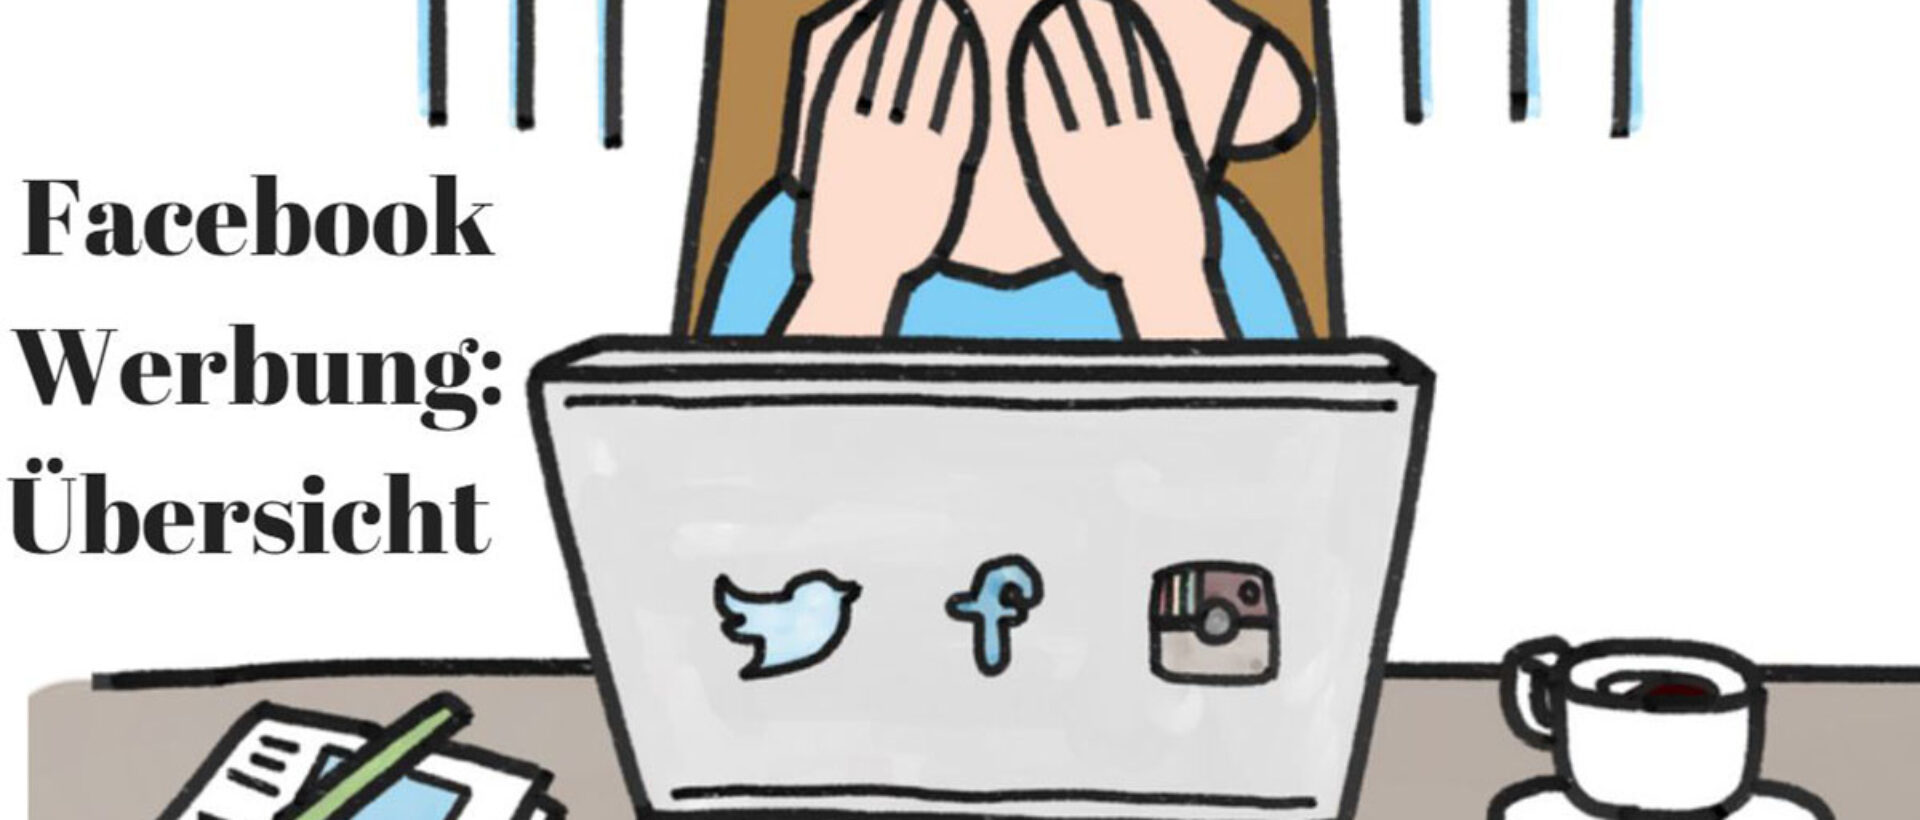 Das Bild zeigt eine Zeichnung einer Frau, die sich die Hände vor dem Gesicht hält aus Frust. Vor ihr ist ein Laptop gezeichnet mit den Logos von Twitter, Facebook und Instagram drauf geklebt. Neben ihr steht eine Kaffeetasse und liegt ein Block. Links steht geschrieben: "Facebook Werbung: Übersicht".